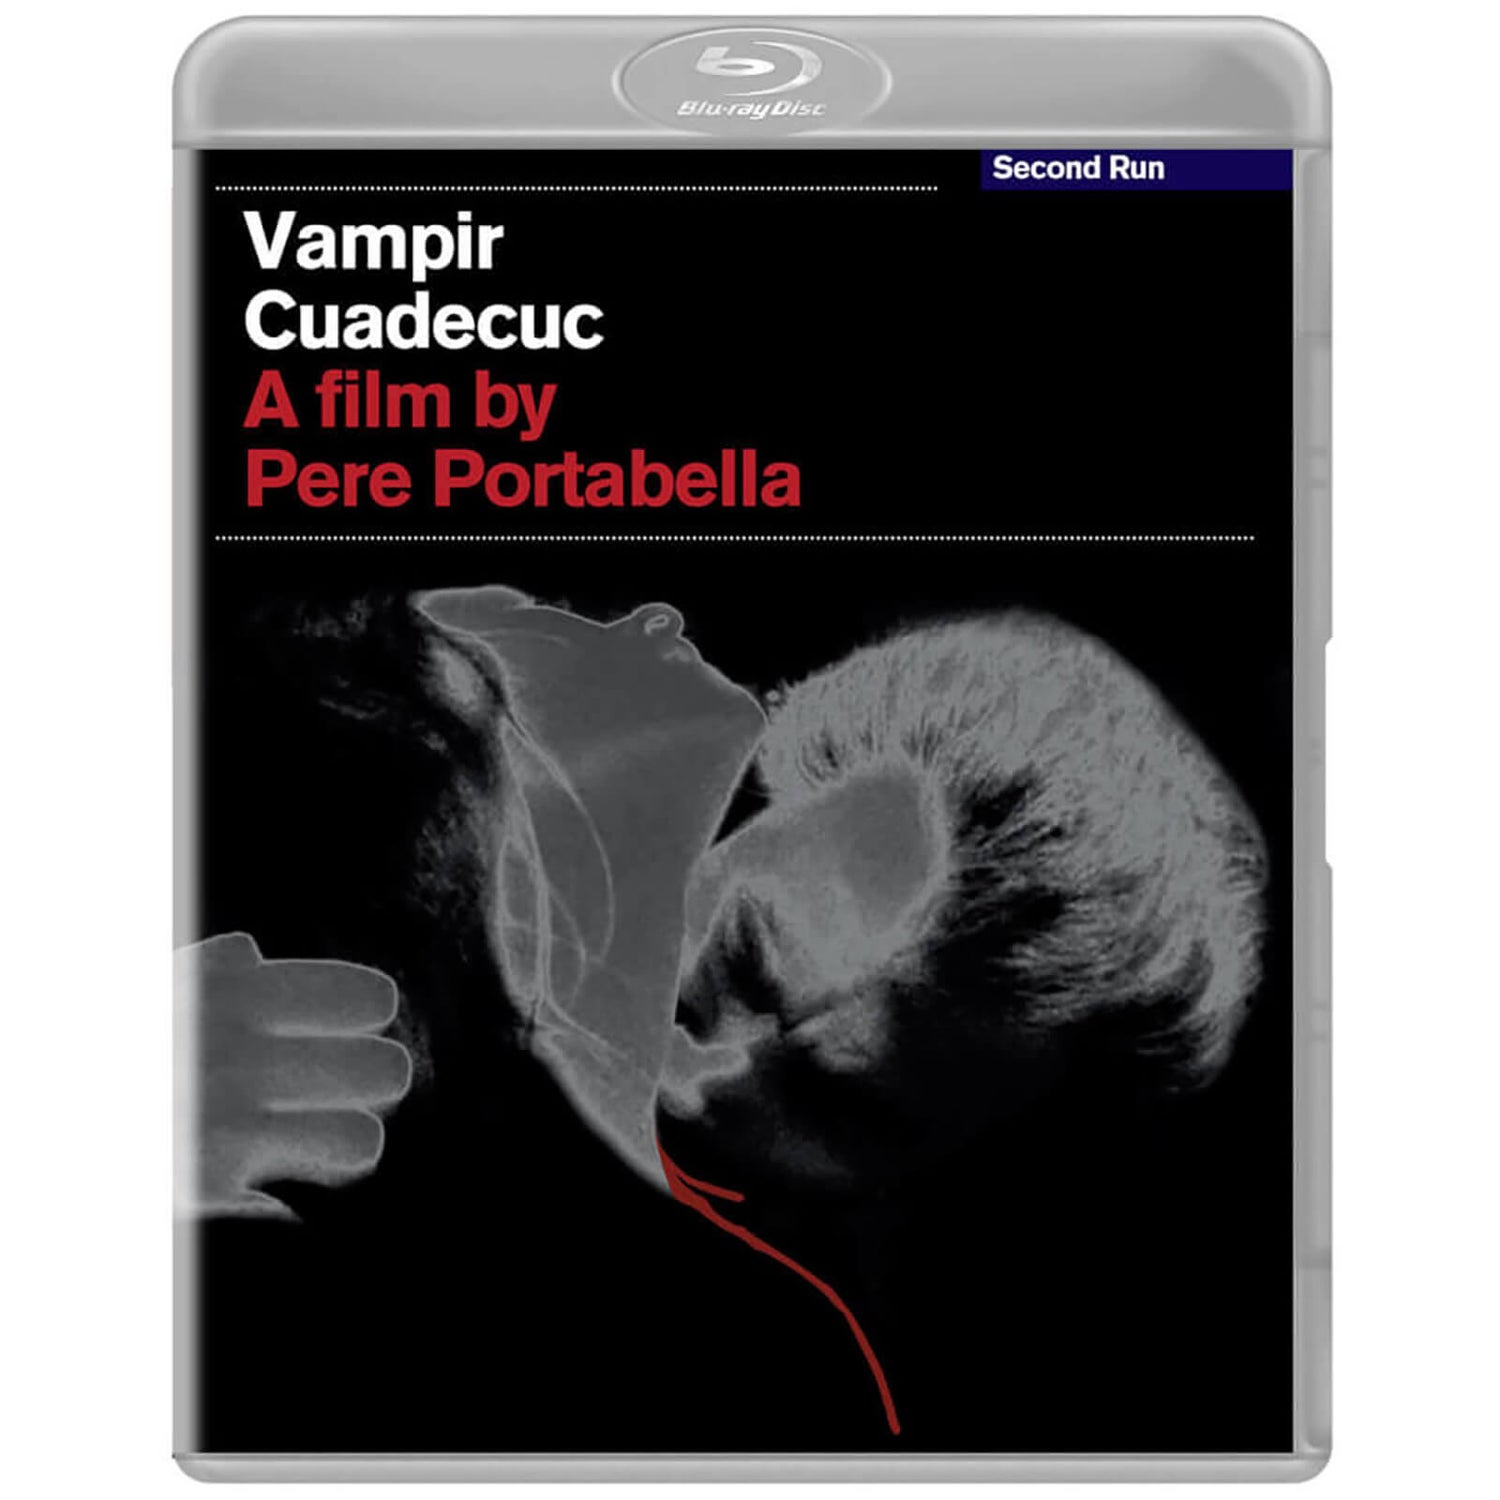 Vampir Cuadecuc Blu-ray